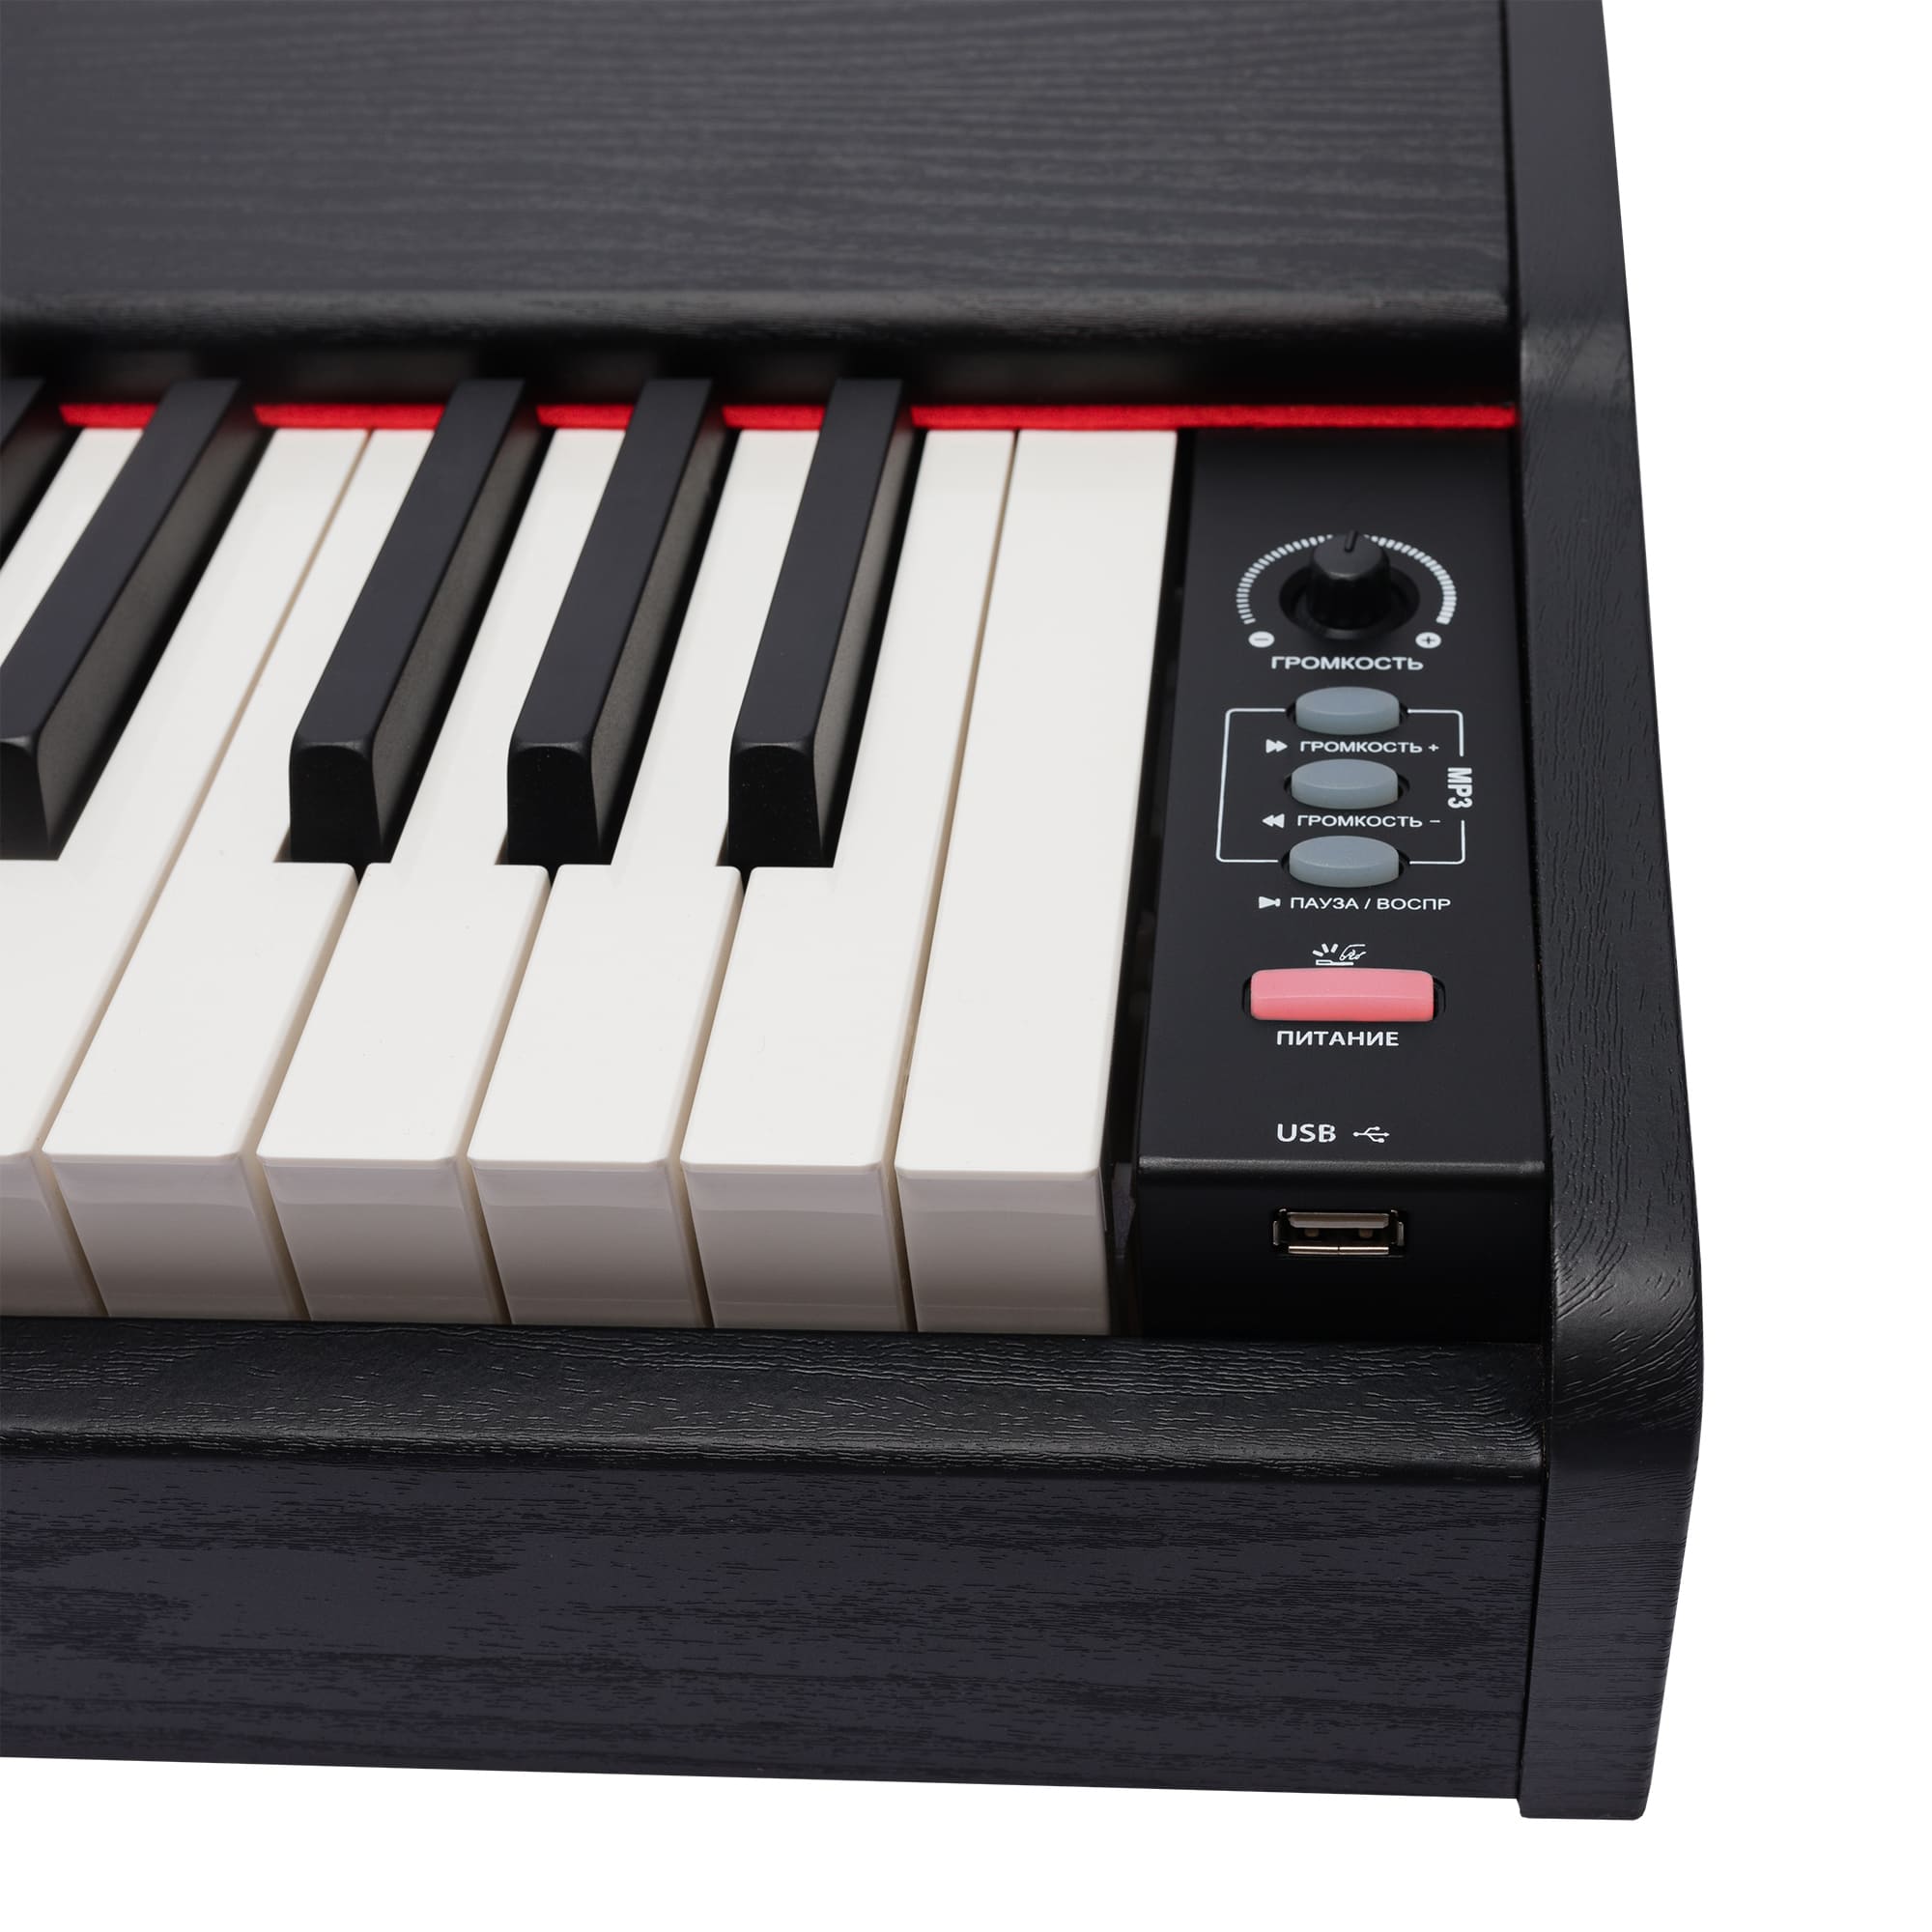 ROCKDALE Keys RDP-1088 Цифровое пианино. 88  полноразмерных клавиш с молоточковой механикой. купить в prostore.me